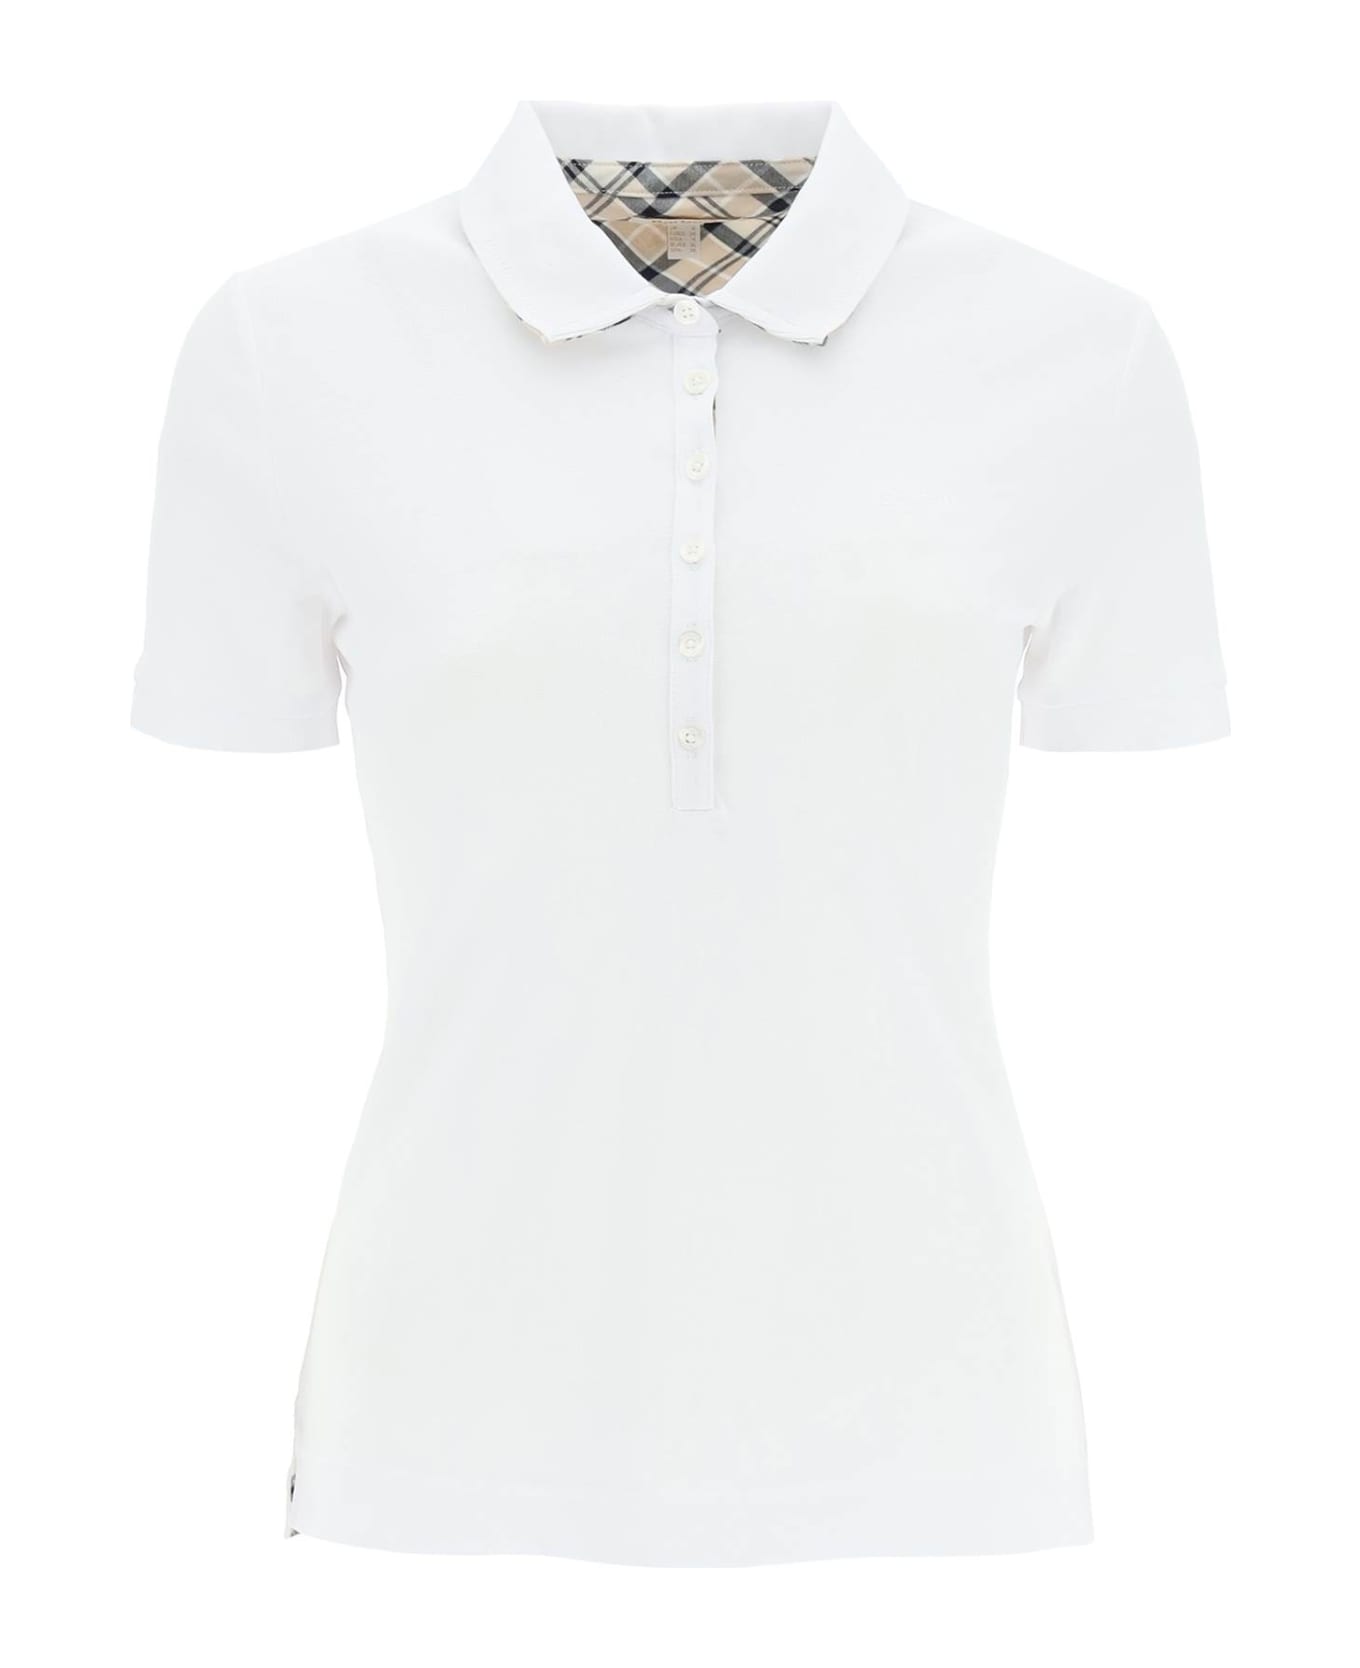 Barbour Classic Polo With Embroidered Logo Detail - WHITE INDIGO TARTAN (White)